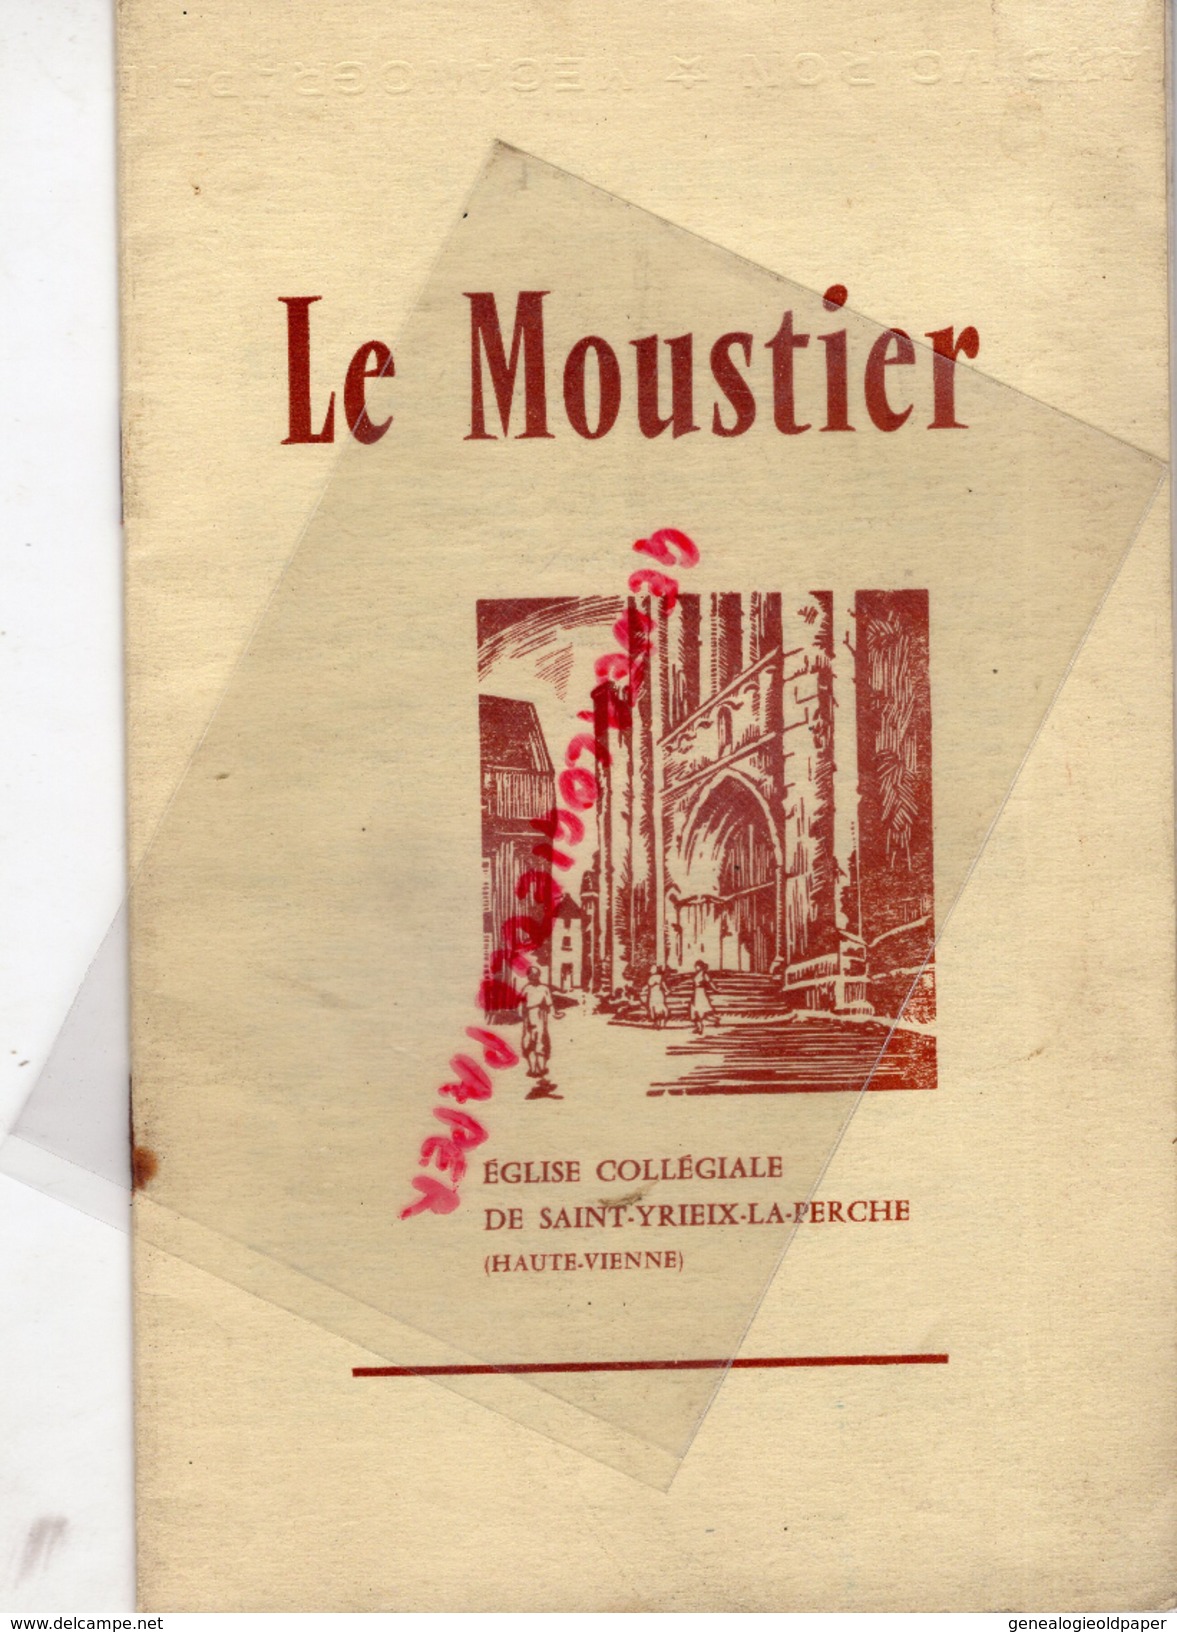 87 - SAINT YRIEIX LA PERCHE -ST YRIEIX- EGLISE COLLEGIALE LE MOUSTIER- 1957- IMPRIMERIE FABREGUE- - Limousin